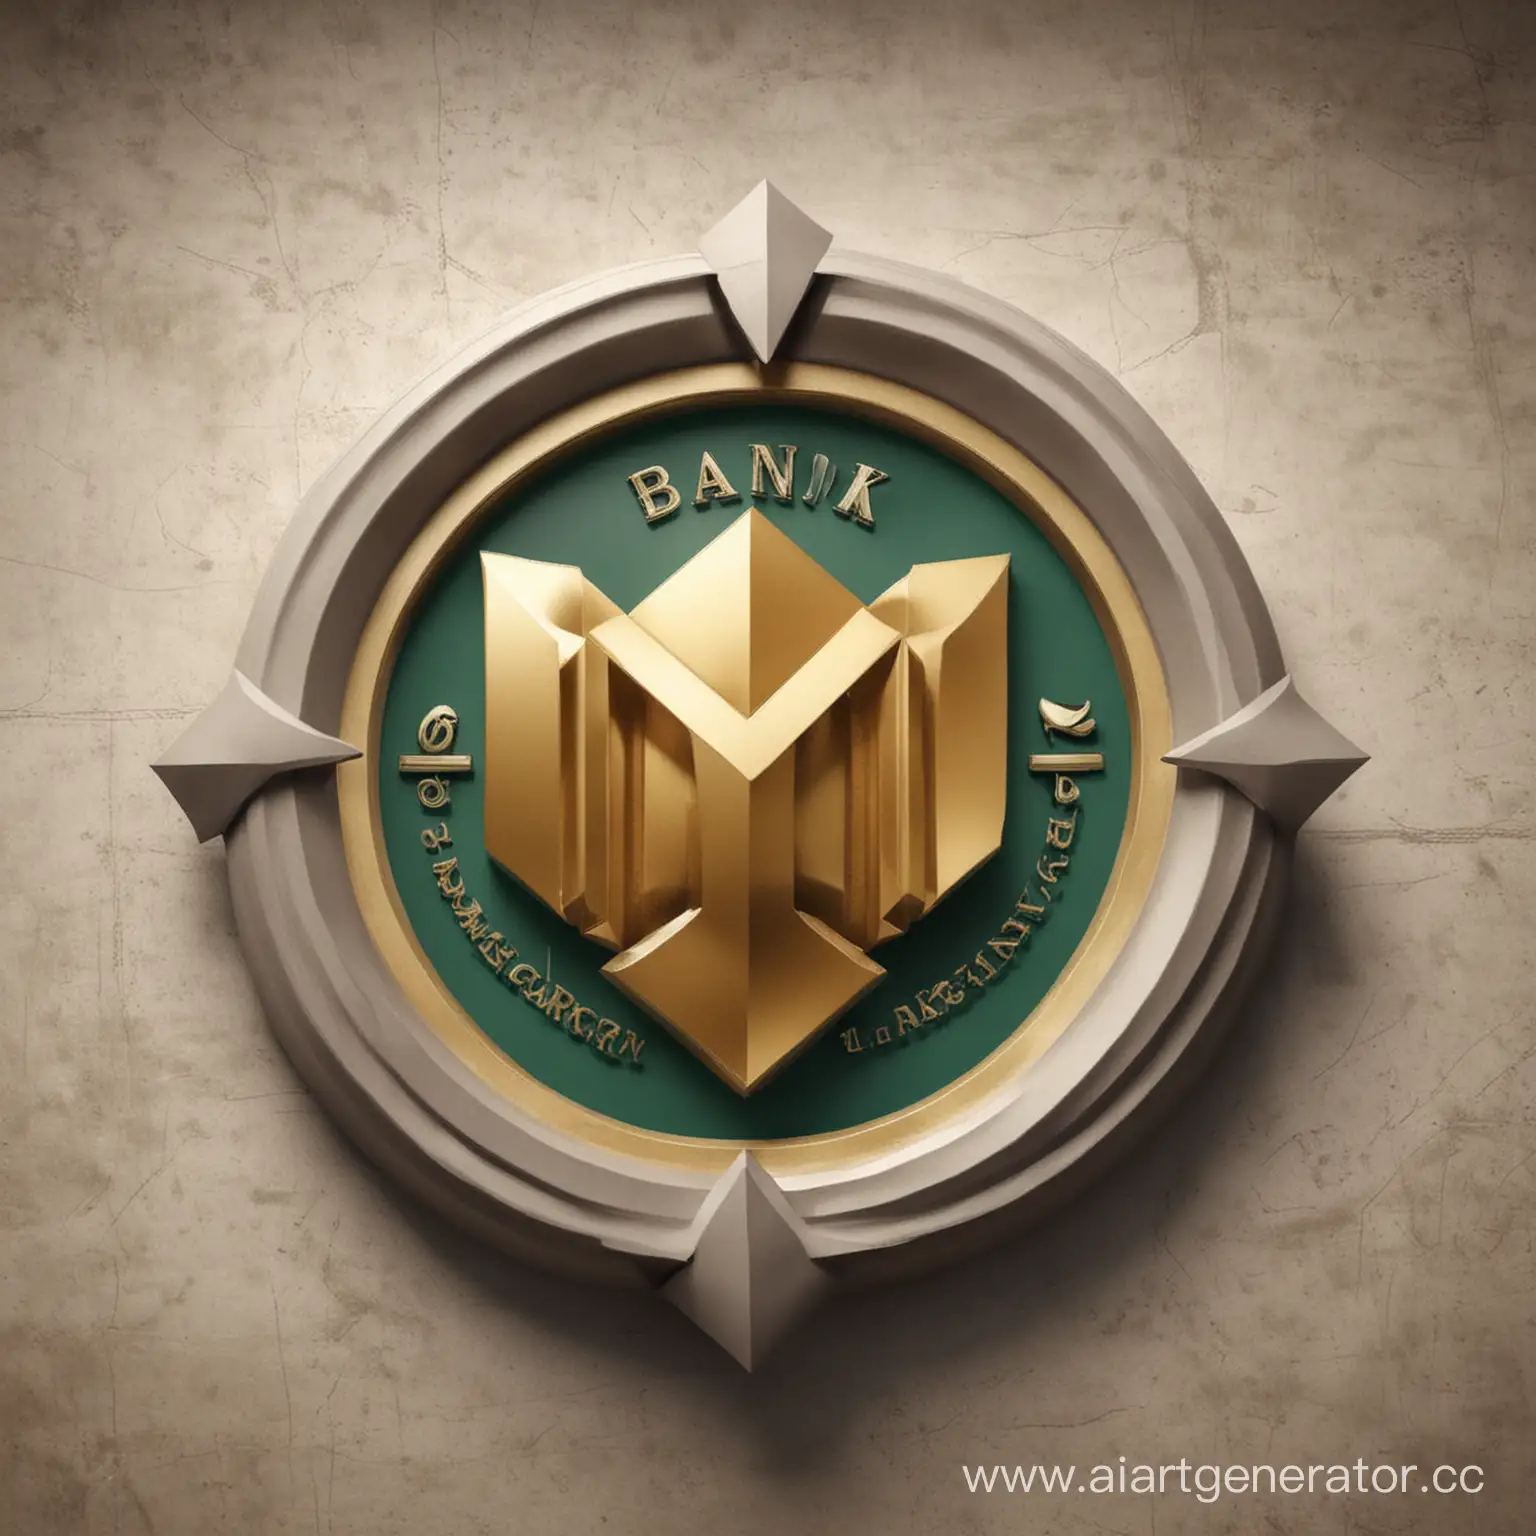 логотип банка по такому запросу : изображение современного стилизованного финансового знака, символизирующего процветание и стабильность.